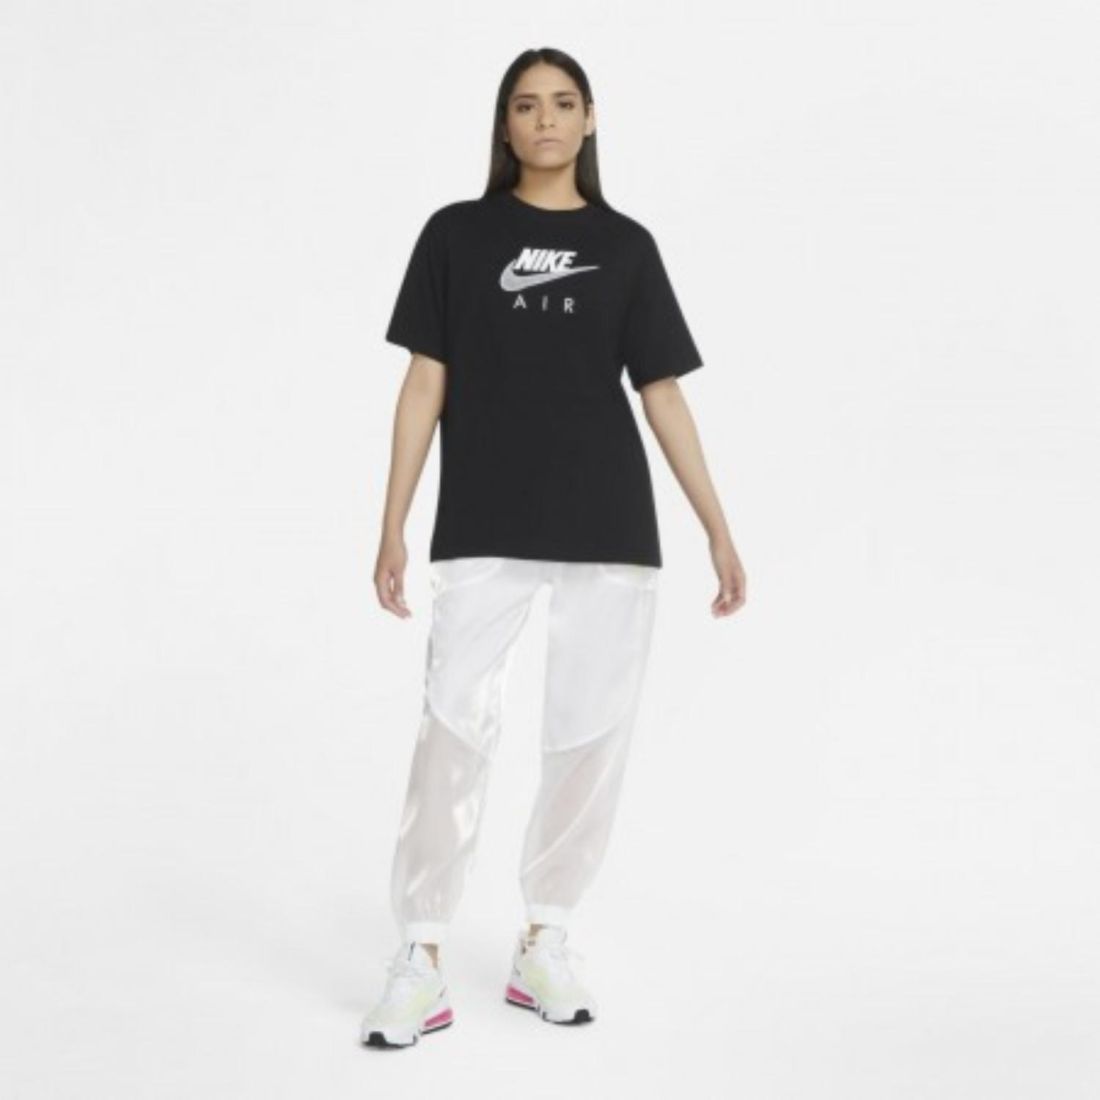 Nike Комфортная женская футболка Nike Air